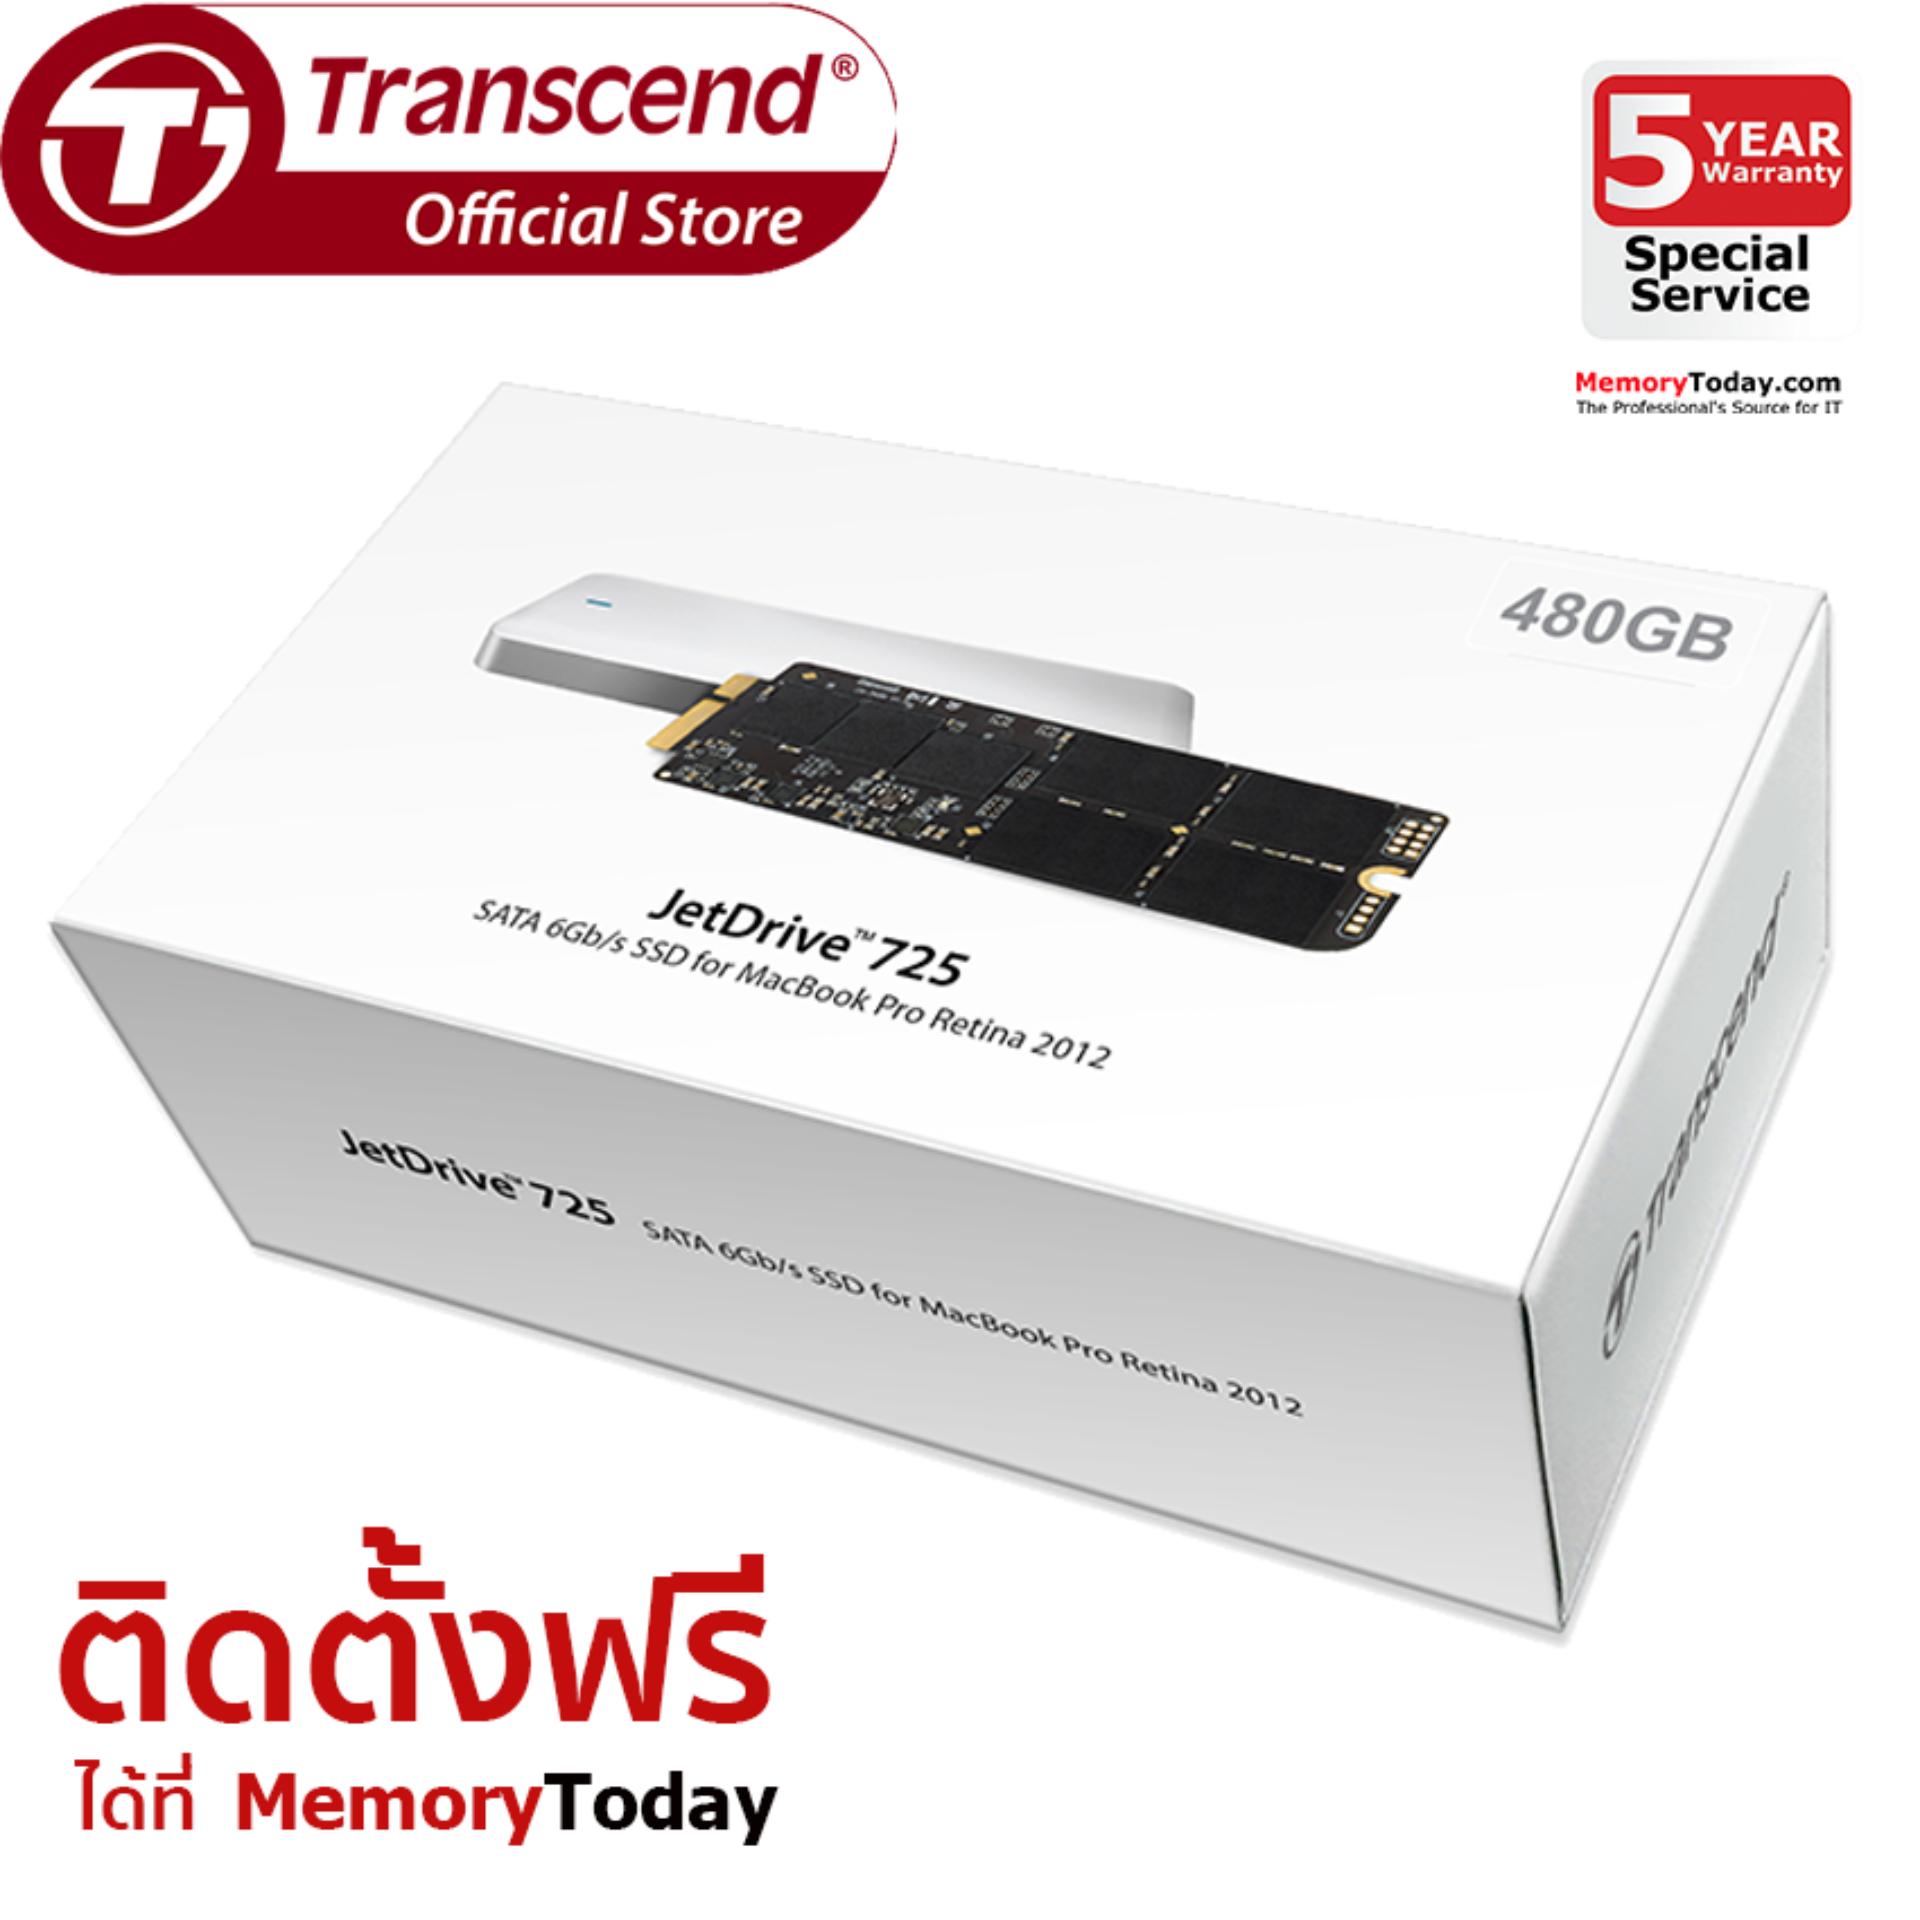 Transcend JetDrive 725 SSD for Macbook Pro Retina 2012 480GB (TS480GJDM725)